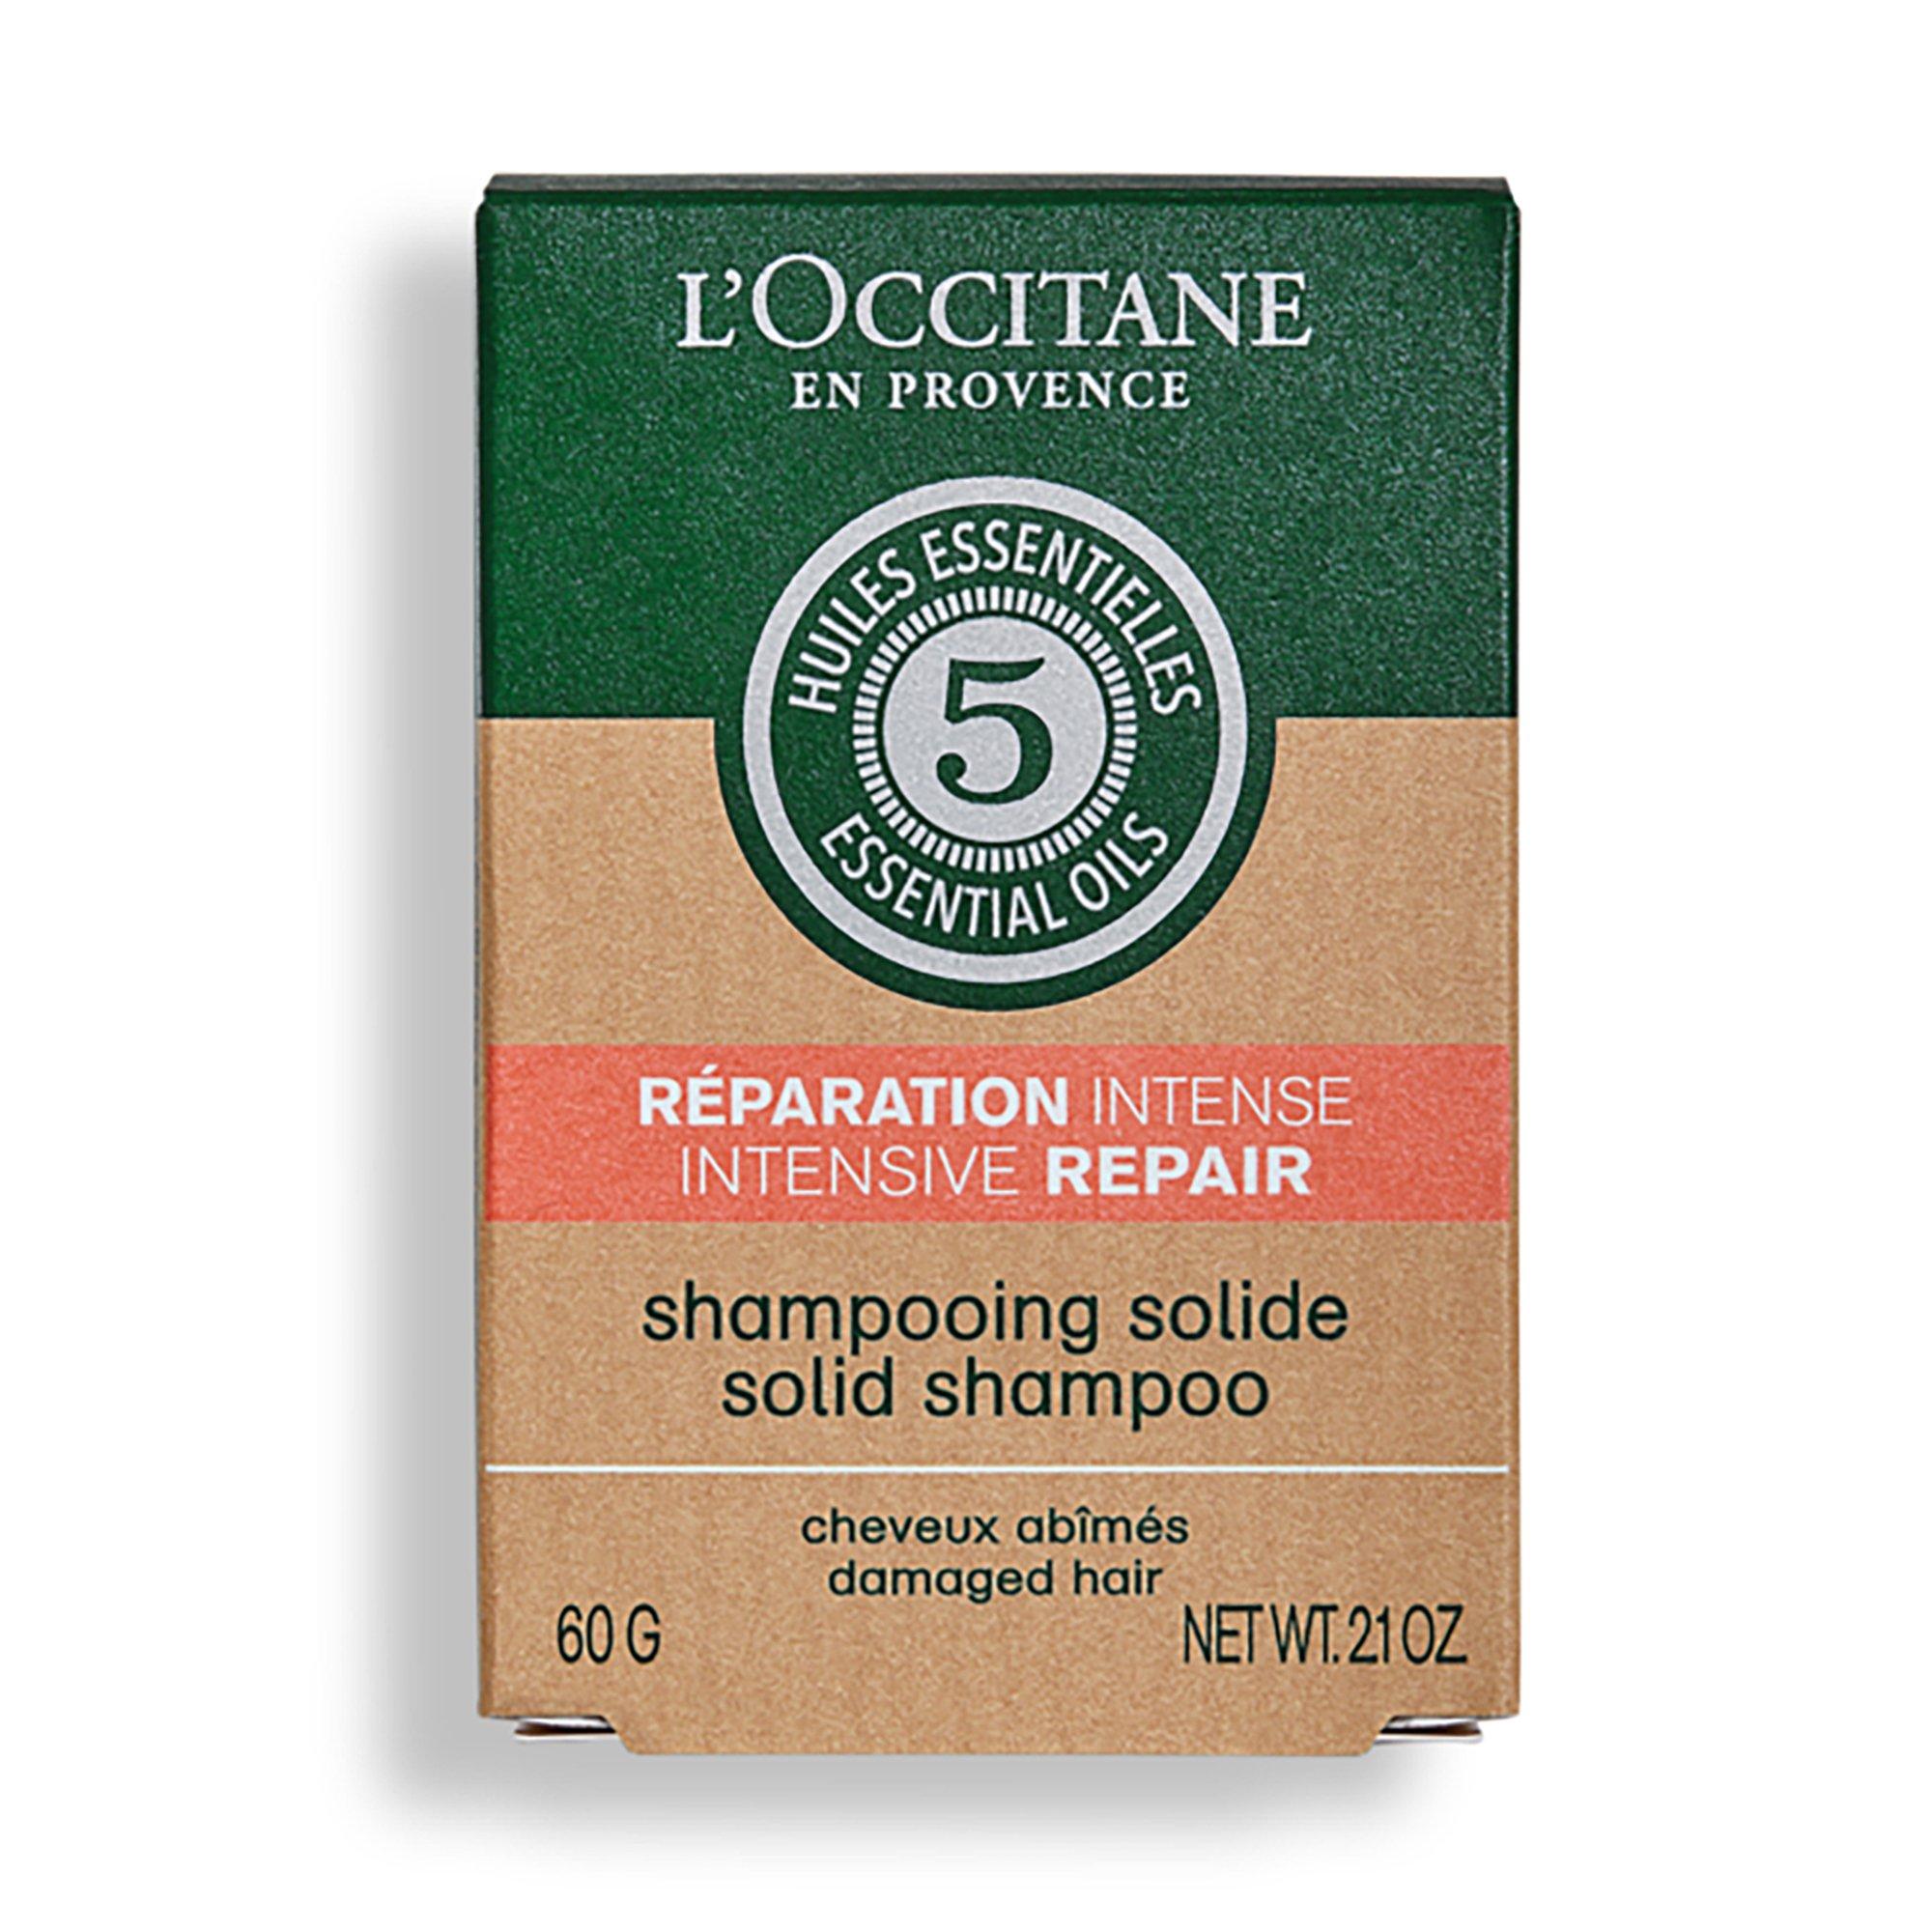 L'OCCITANE Shampoo Solide Répair Intensive Repair Shampooing Solide 